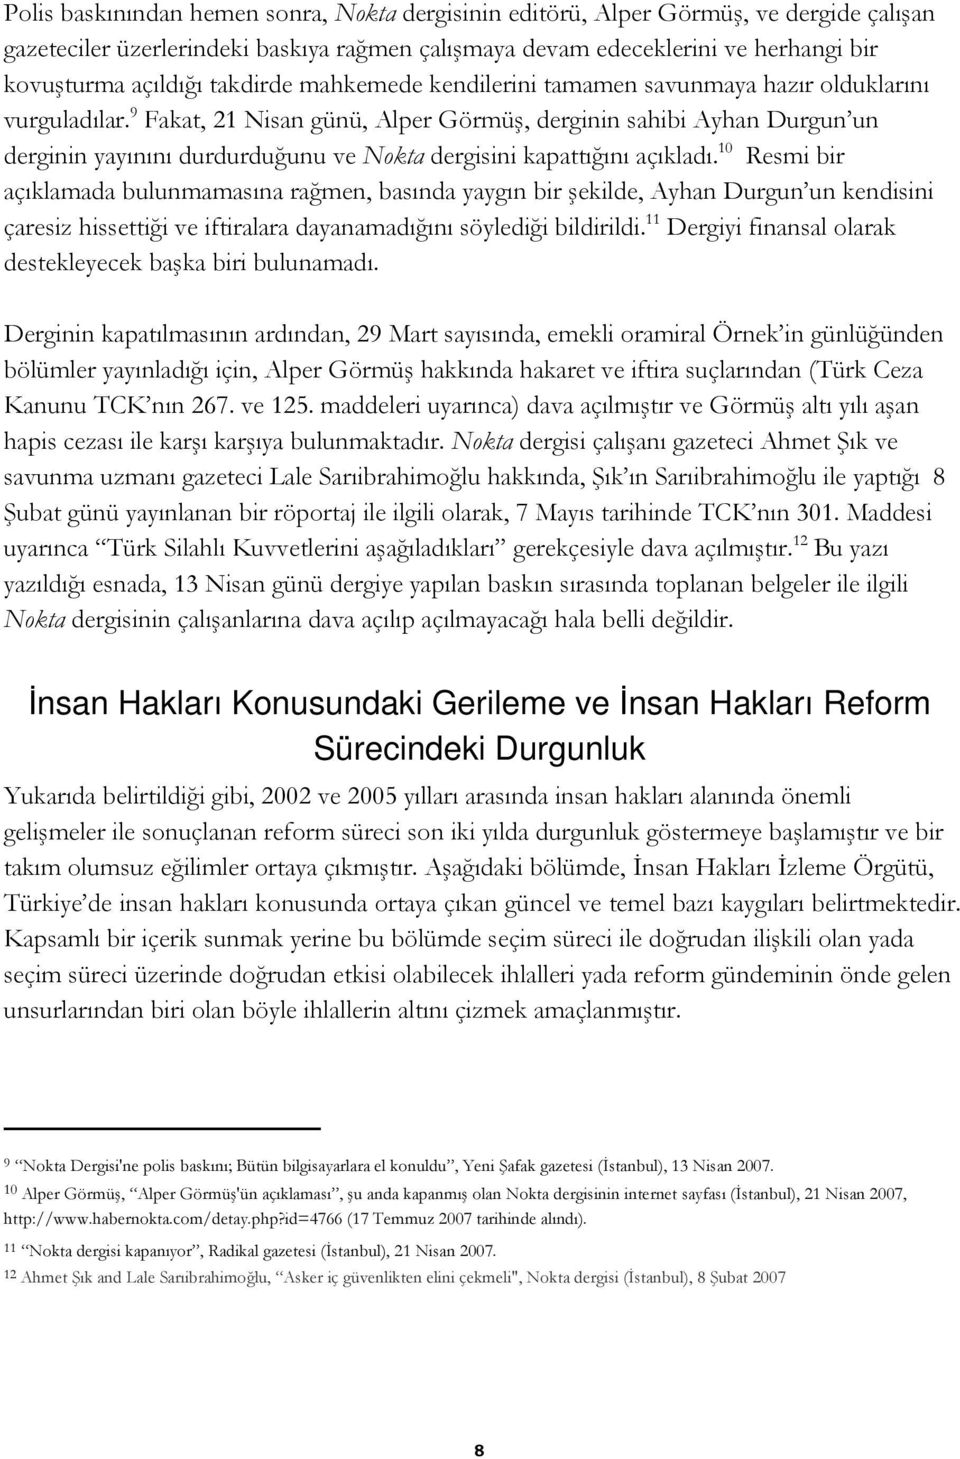 9 Fakat, 21 Nisan günü, Alper Görmüş, derginin sahibi Ayhan Durgun un derginin yayınını durdurduğunu ve Nokta dergisini kapattığını açıkladı.